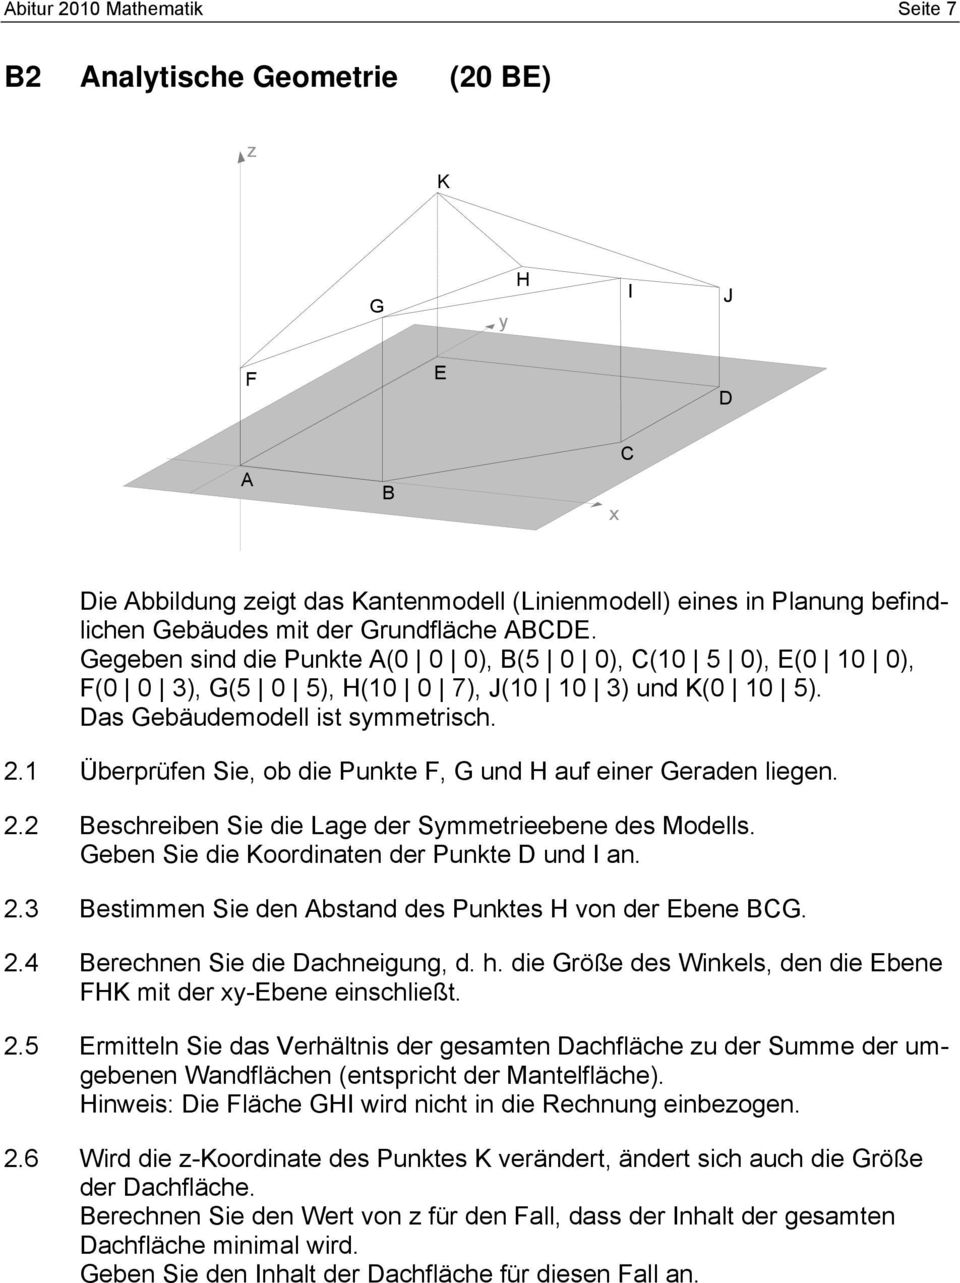 1 Überprüfen Sie, ob die Punkte F, G und H auf einer Geraden liegen. 2.2 Beschreiben Sie die Lage der Smmetrieebene des Modells. Geben Sie die Koordinaten der Punkte D und I an. 2.3 Bestimmen Sie den Abstand des Punktes H von der Ebene BCG.